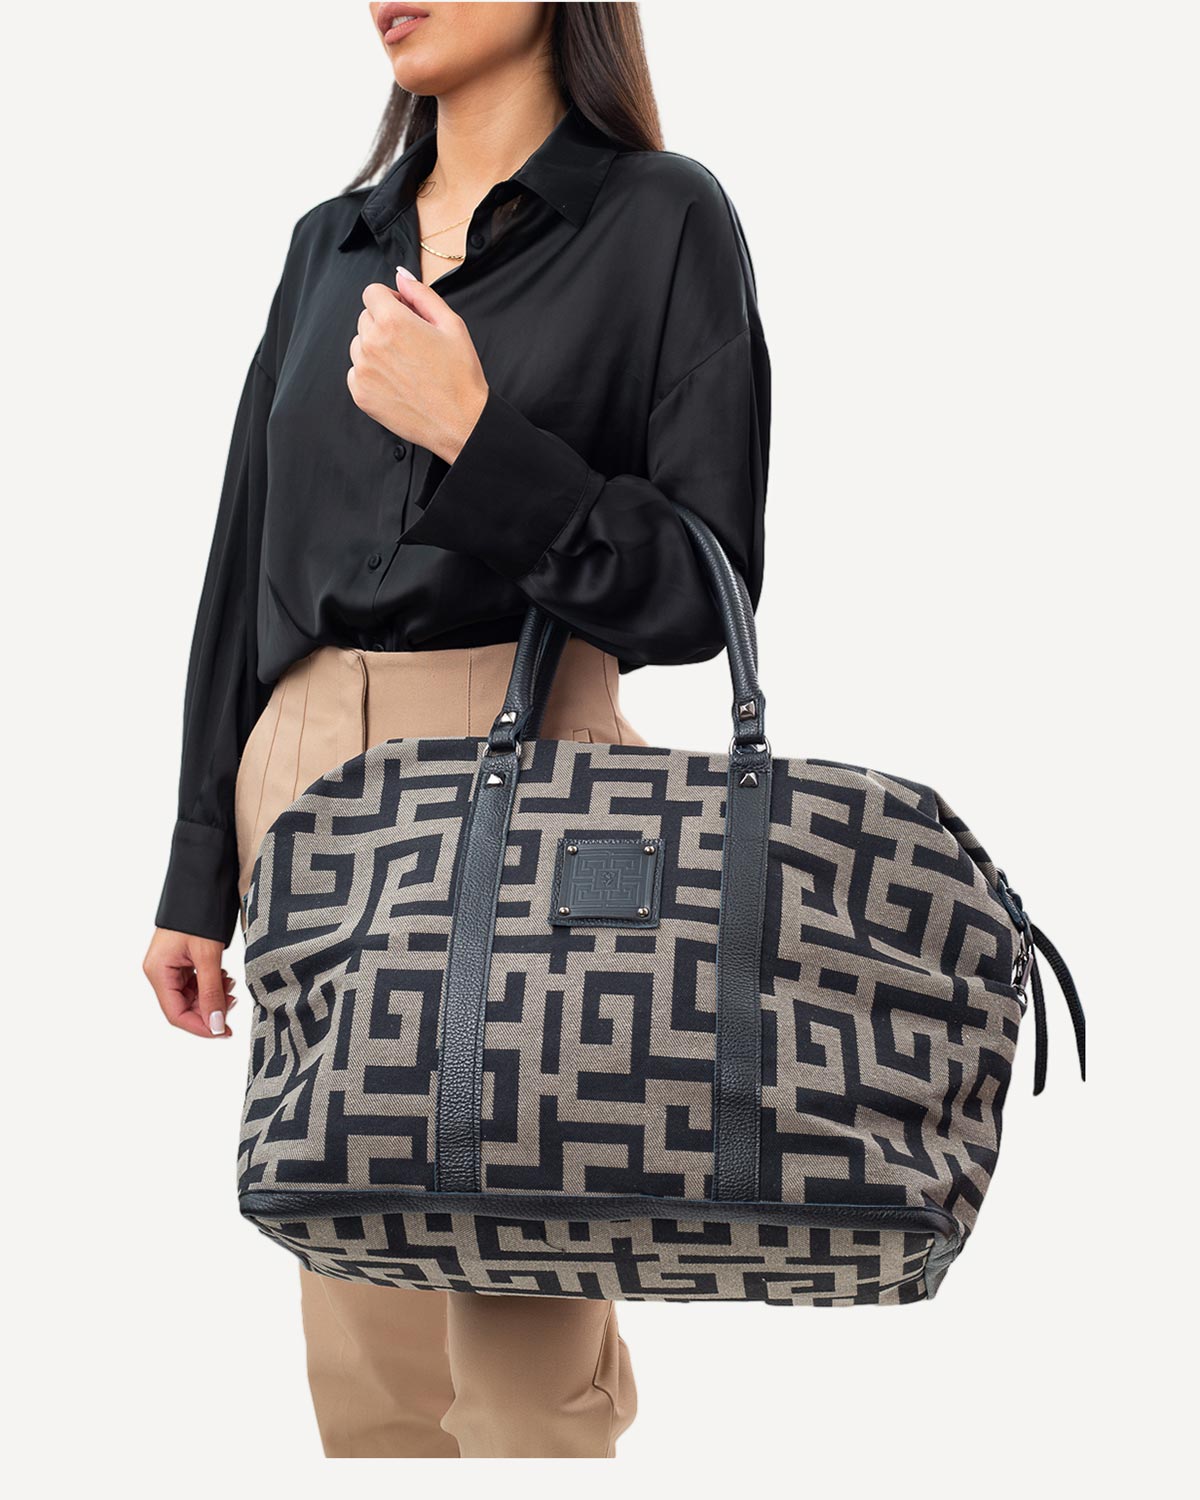 Γυναίκα - Shopping - Ames Bags Πούρο-Μαύρο